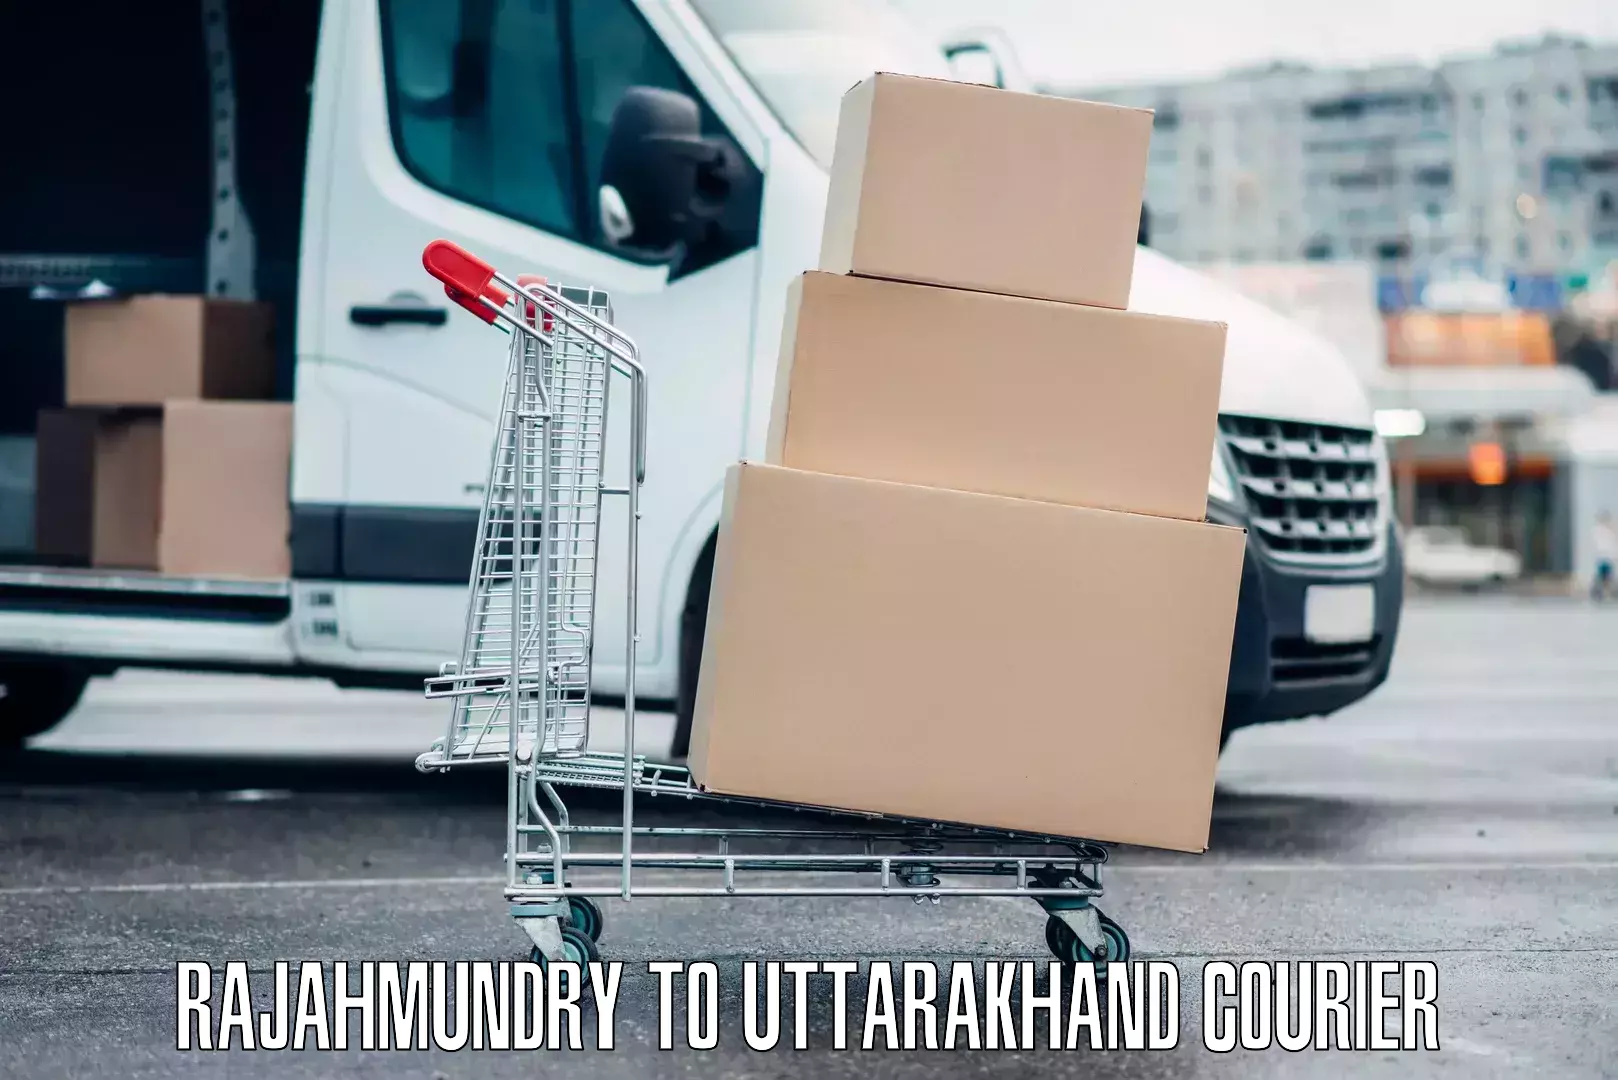 Luggage dispatch service Rajahmundry to Uttarakhand